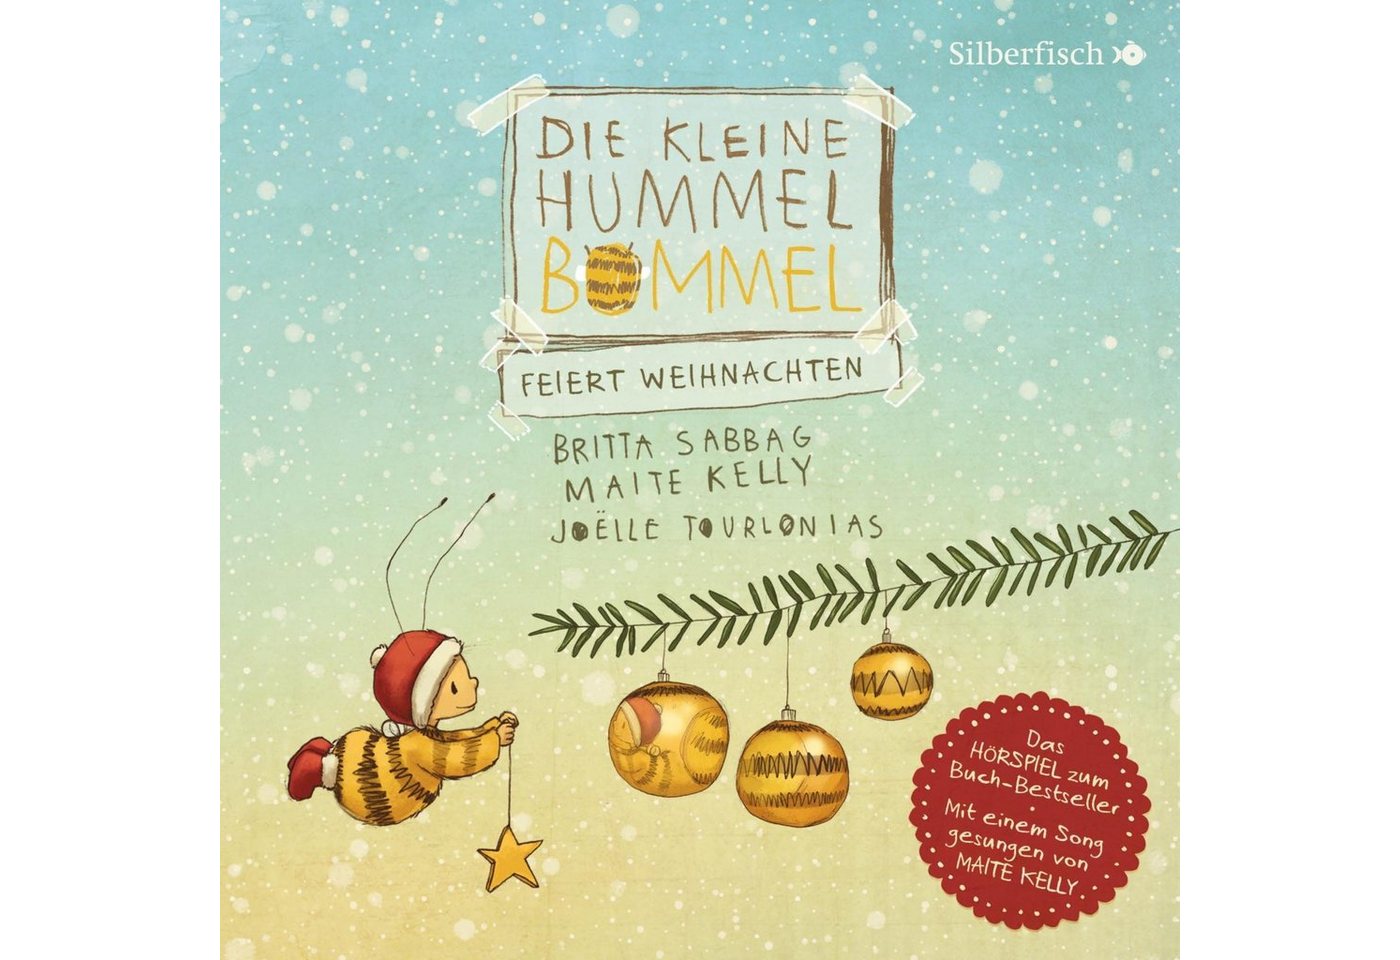 Silberfisch Verlag Hörspiel-CD Die kleine Hummel Bommel feiert Weihnachten (Die kleine Hummel Bomm... von Silberfisch Verlag